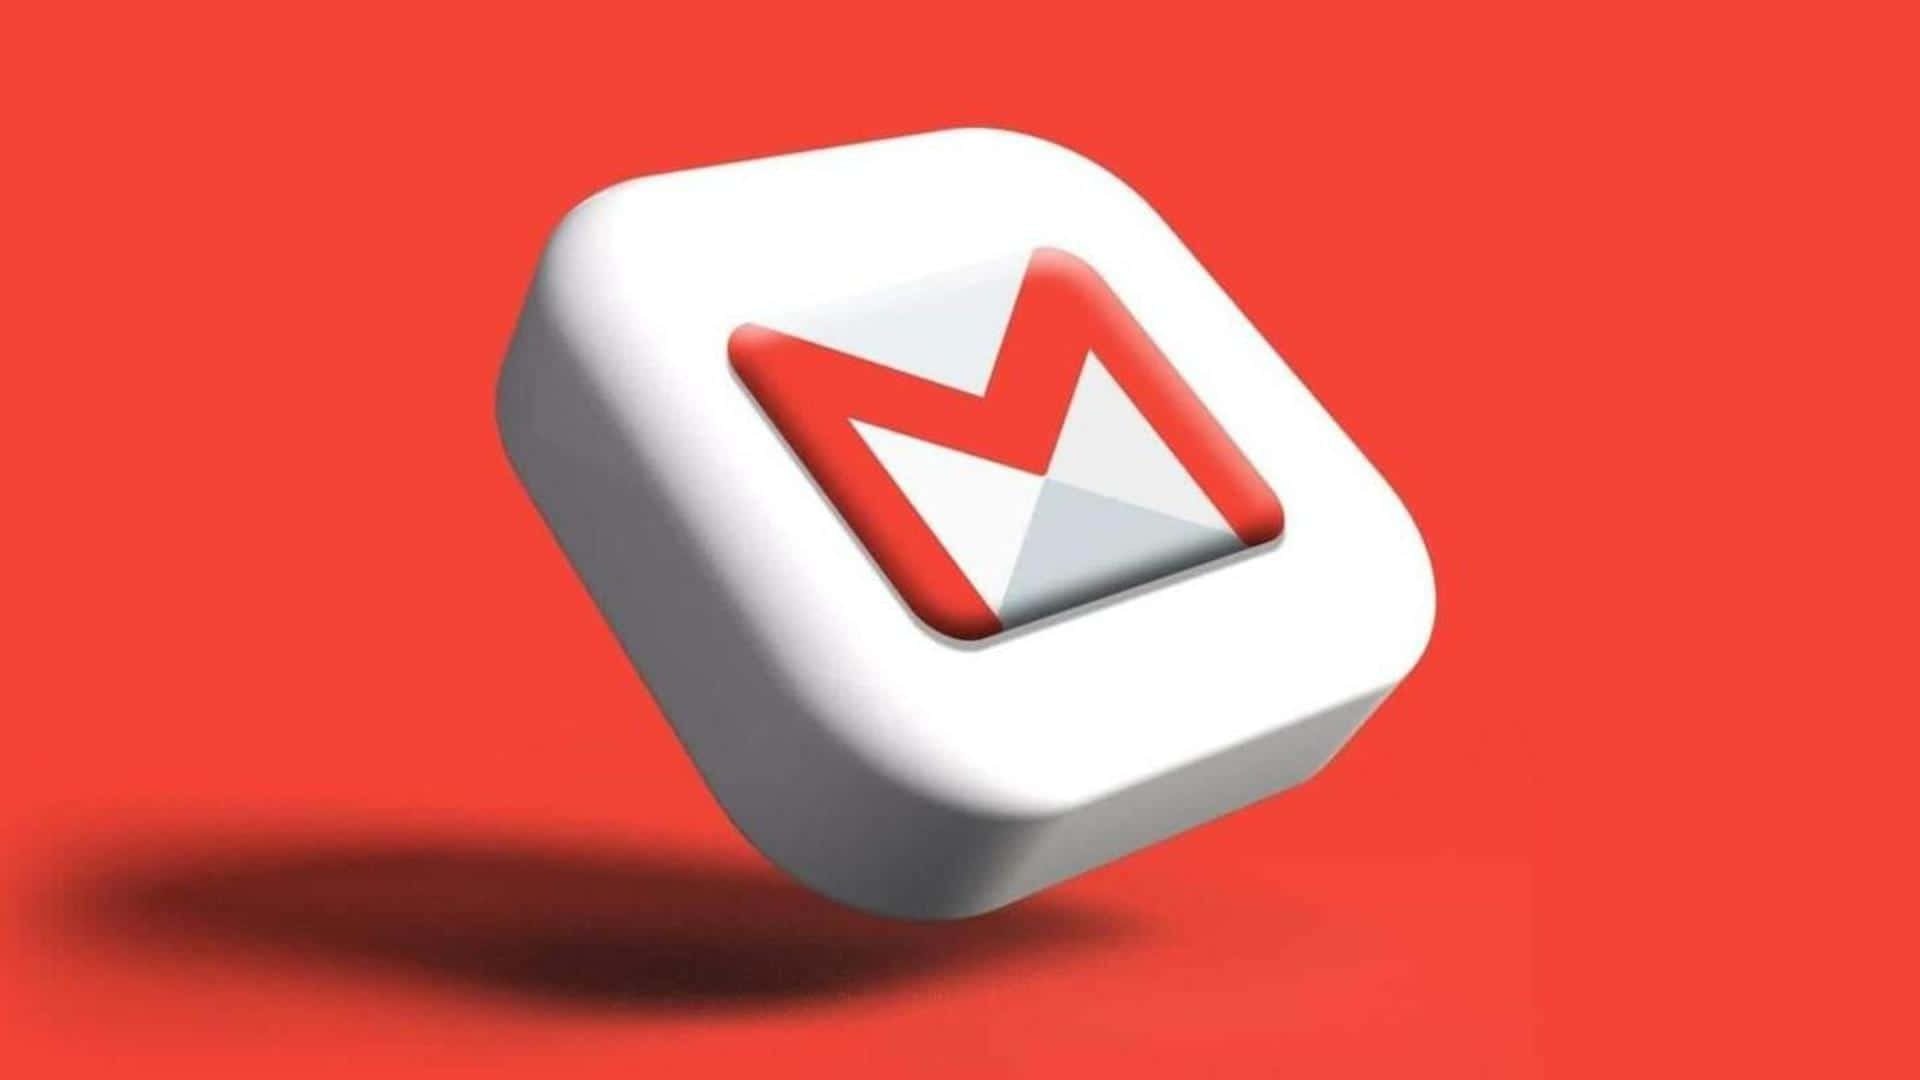 Scoprii Vantaggi Di Utilizzare Gmail